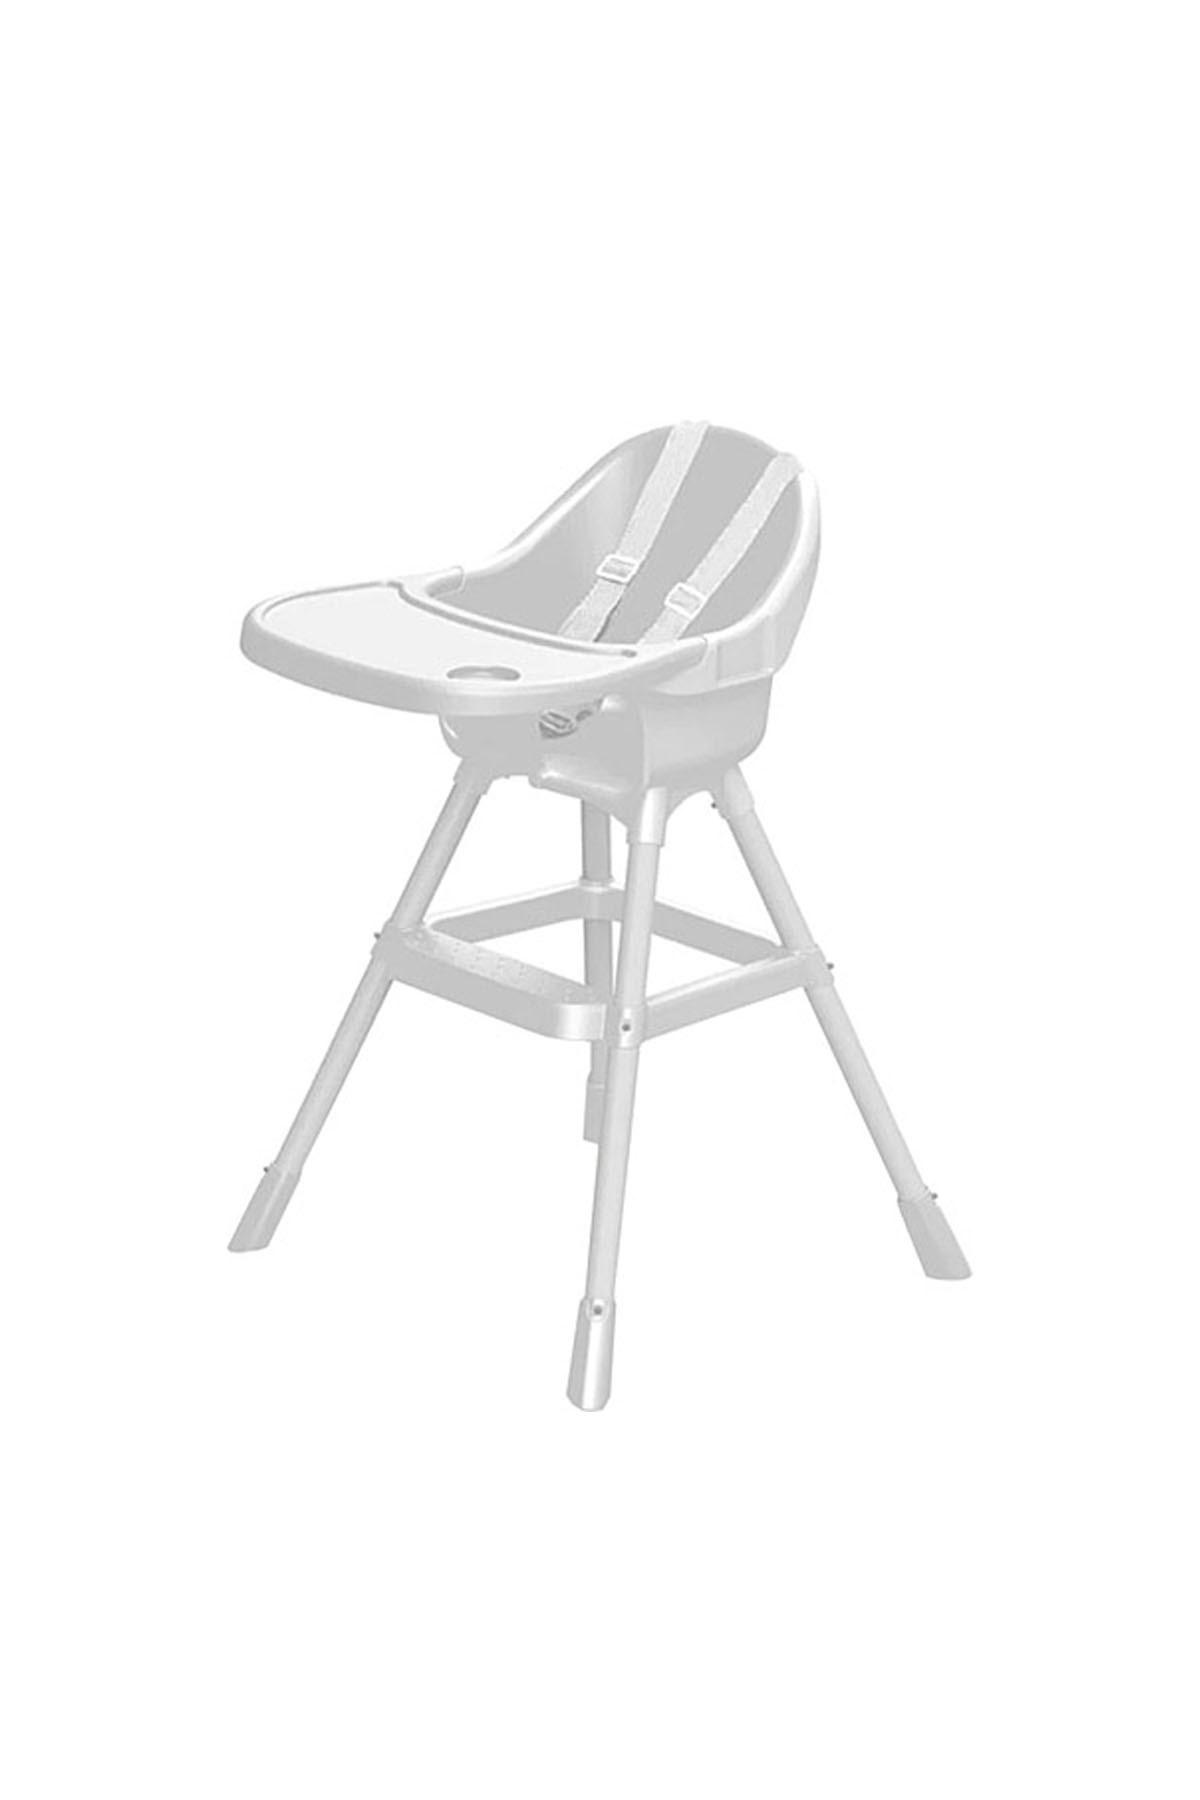 Dolu Oyuncak Plastik Emniyet Kemeri Tepsili Katlanır Portatif Mama Sandalyesi Beyaz